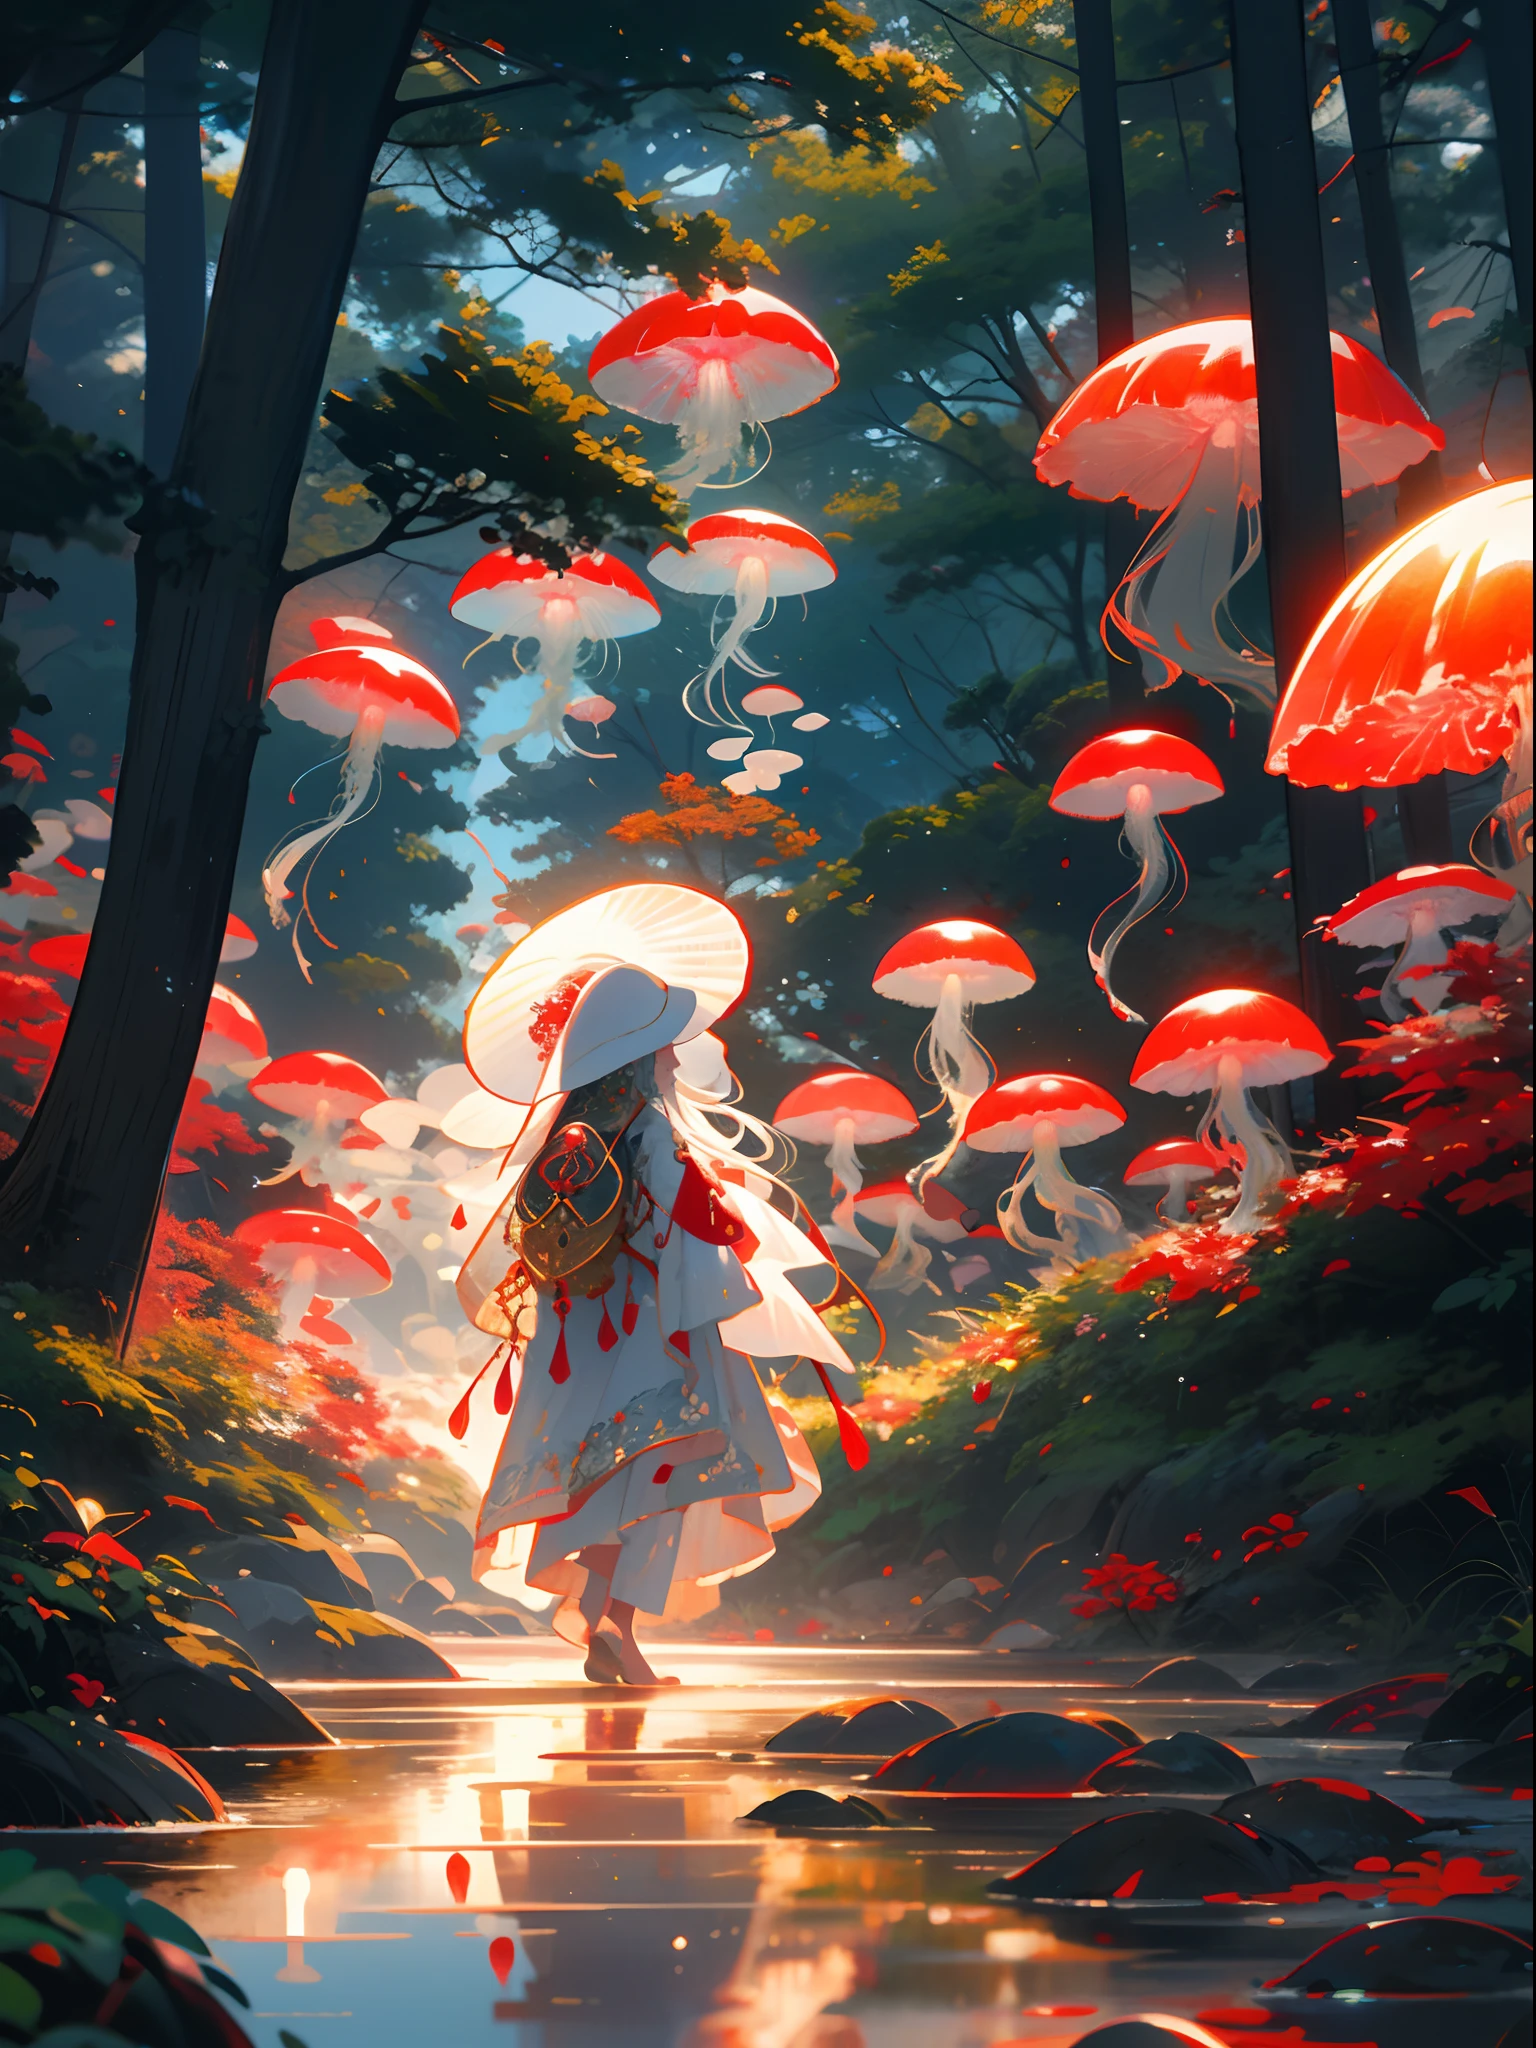 红色水母,jellyfish森林, 1個女孩, 長髮, 裙子, 獨自的, 白色的頭髮,紅帽,蘑菇, 自然, 戶外, 樹, 行人徒步區, 森林, 水